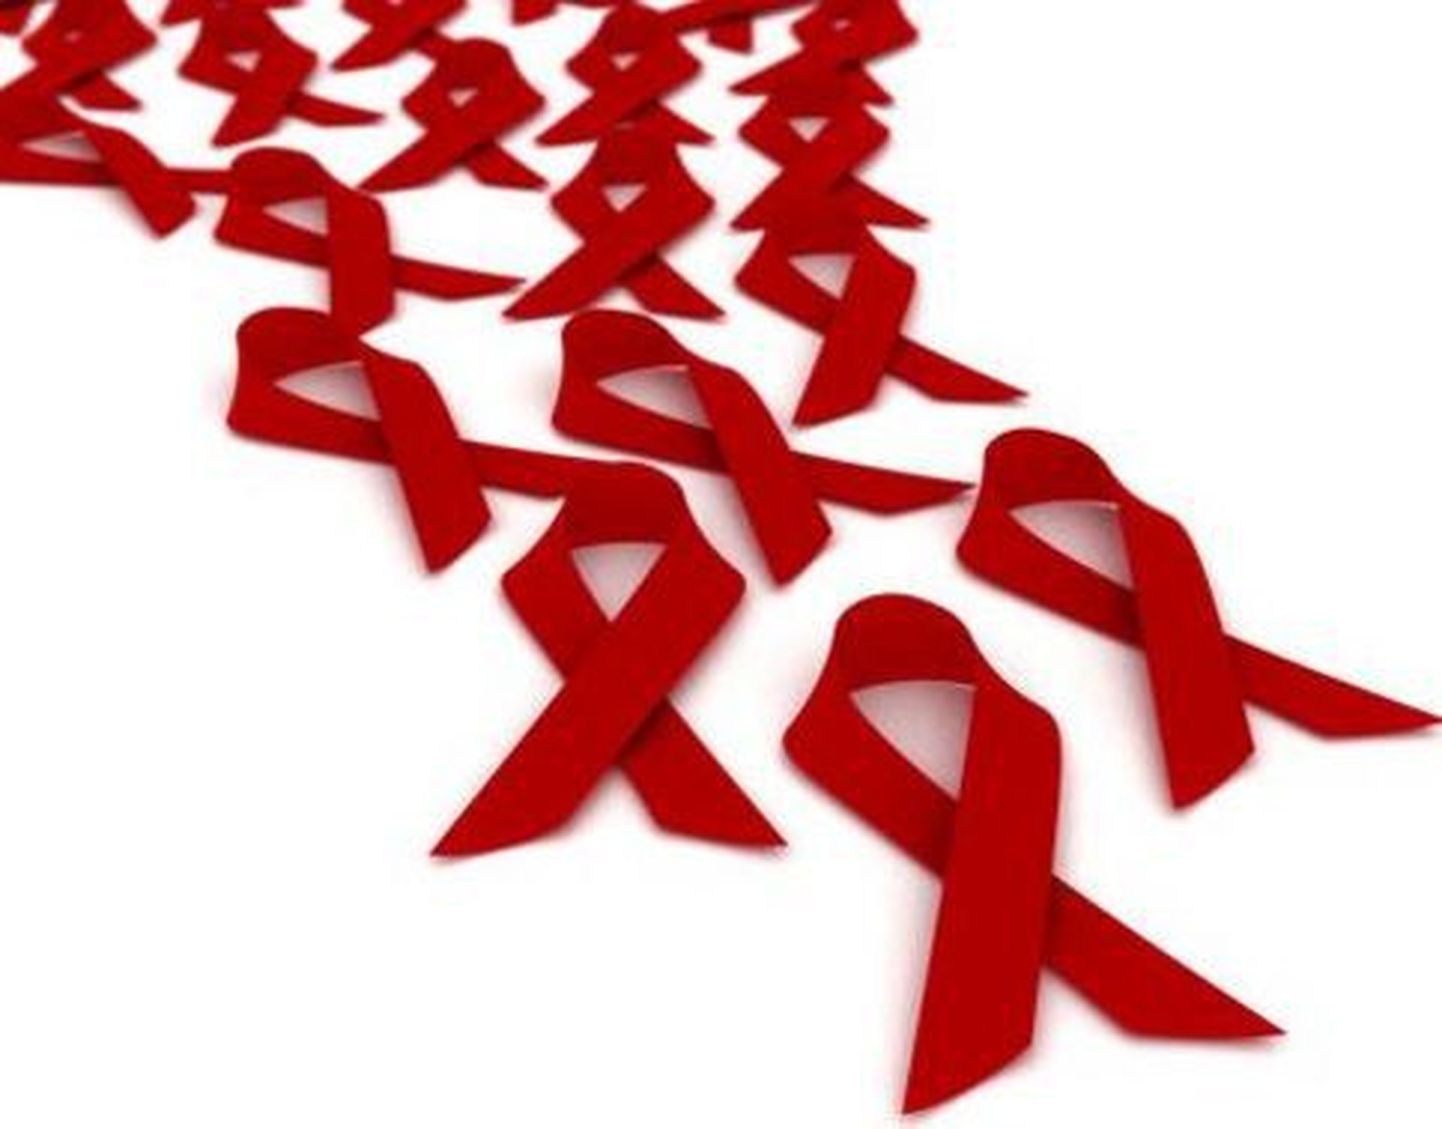 Pildil on aidsi vastu võitlemist sümboliseerivad punased lindid.